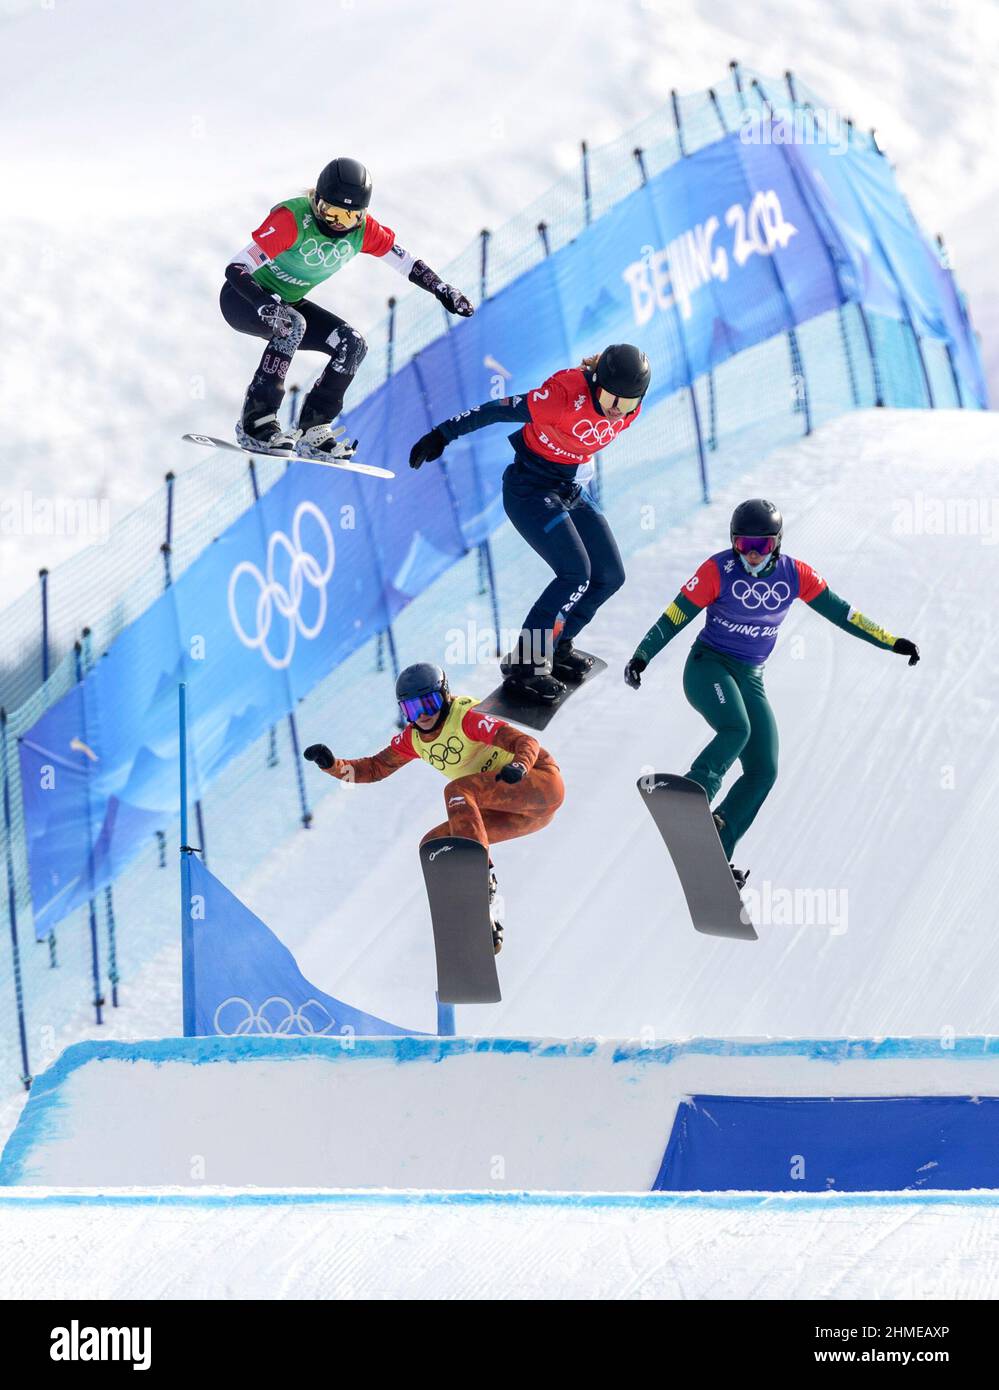 Zhangjiakou, province du Hebei, au nord de la Chine. 9th févr. 2022. Faye Gulini, des États-Unis, Charlotte Bankes, de Grande-Bretagne, Belle Brockhoff, d'Australie, et Tess Critchlow, du Canada (de haut en bas), se disputent le quart-finale féminine des Jeux olympiques d'hiver de Beijing 2022 au Genting Snow Park, à Zhangjiakou, dans la province de Hebei, en Chine du Nord, le 9 février 2022. Credit: FEI Maohua/Xinhua/Alamy Live News Banque D'Images